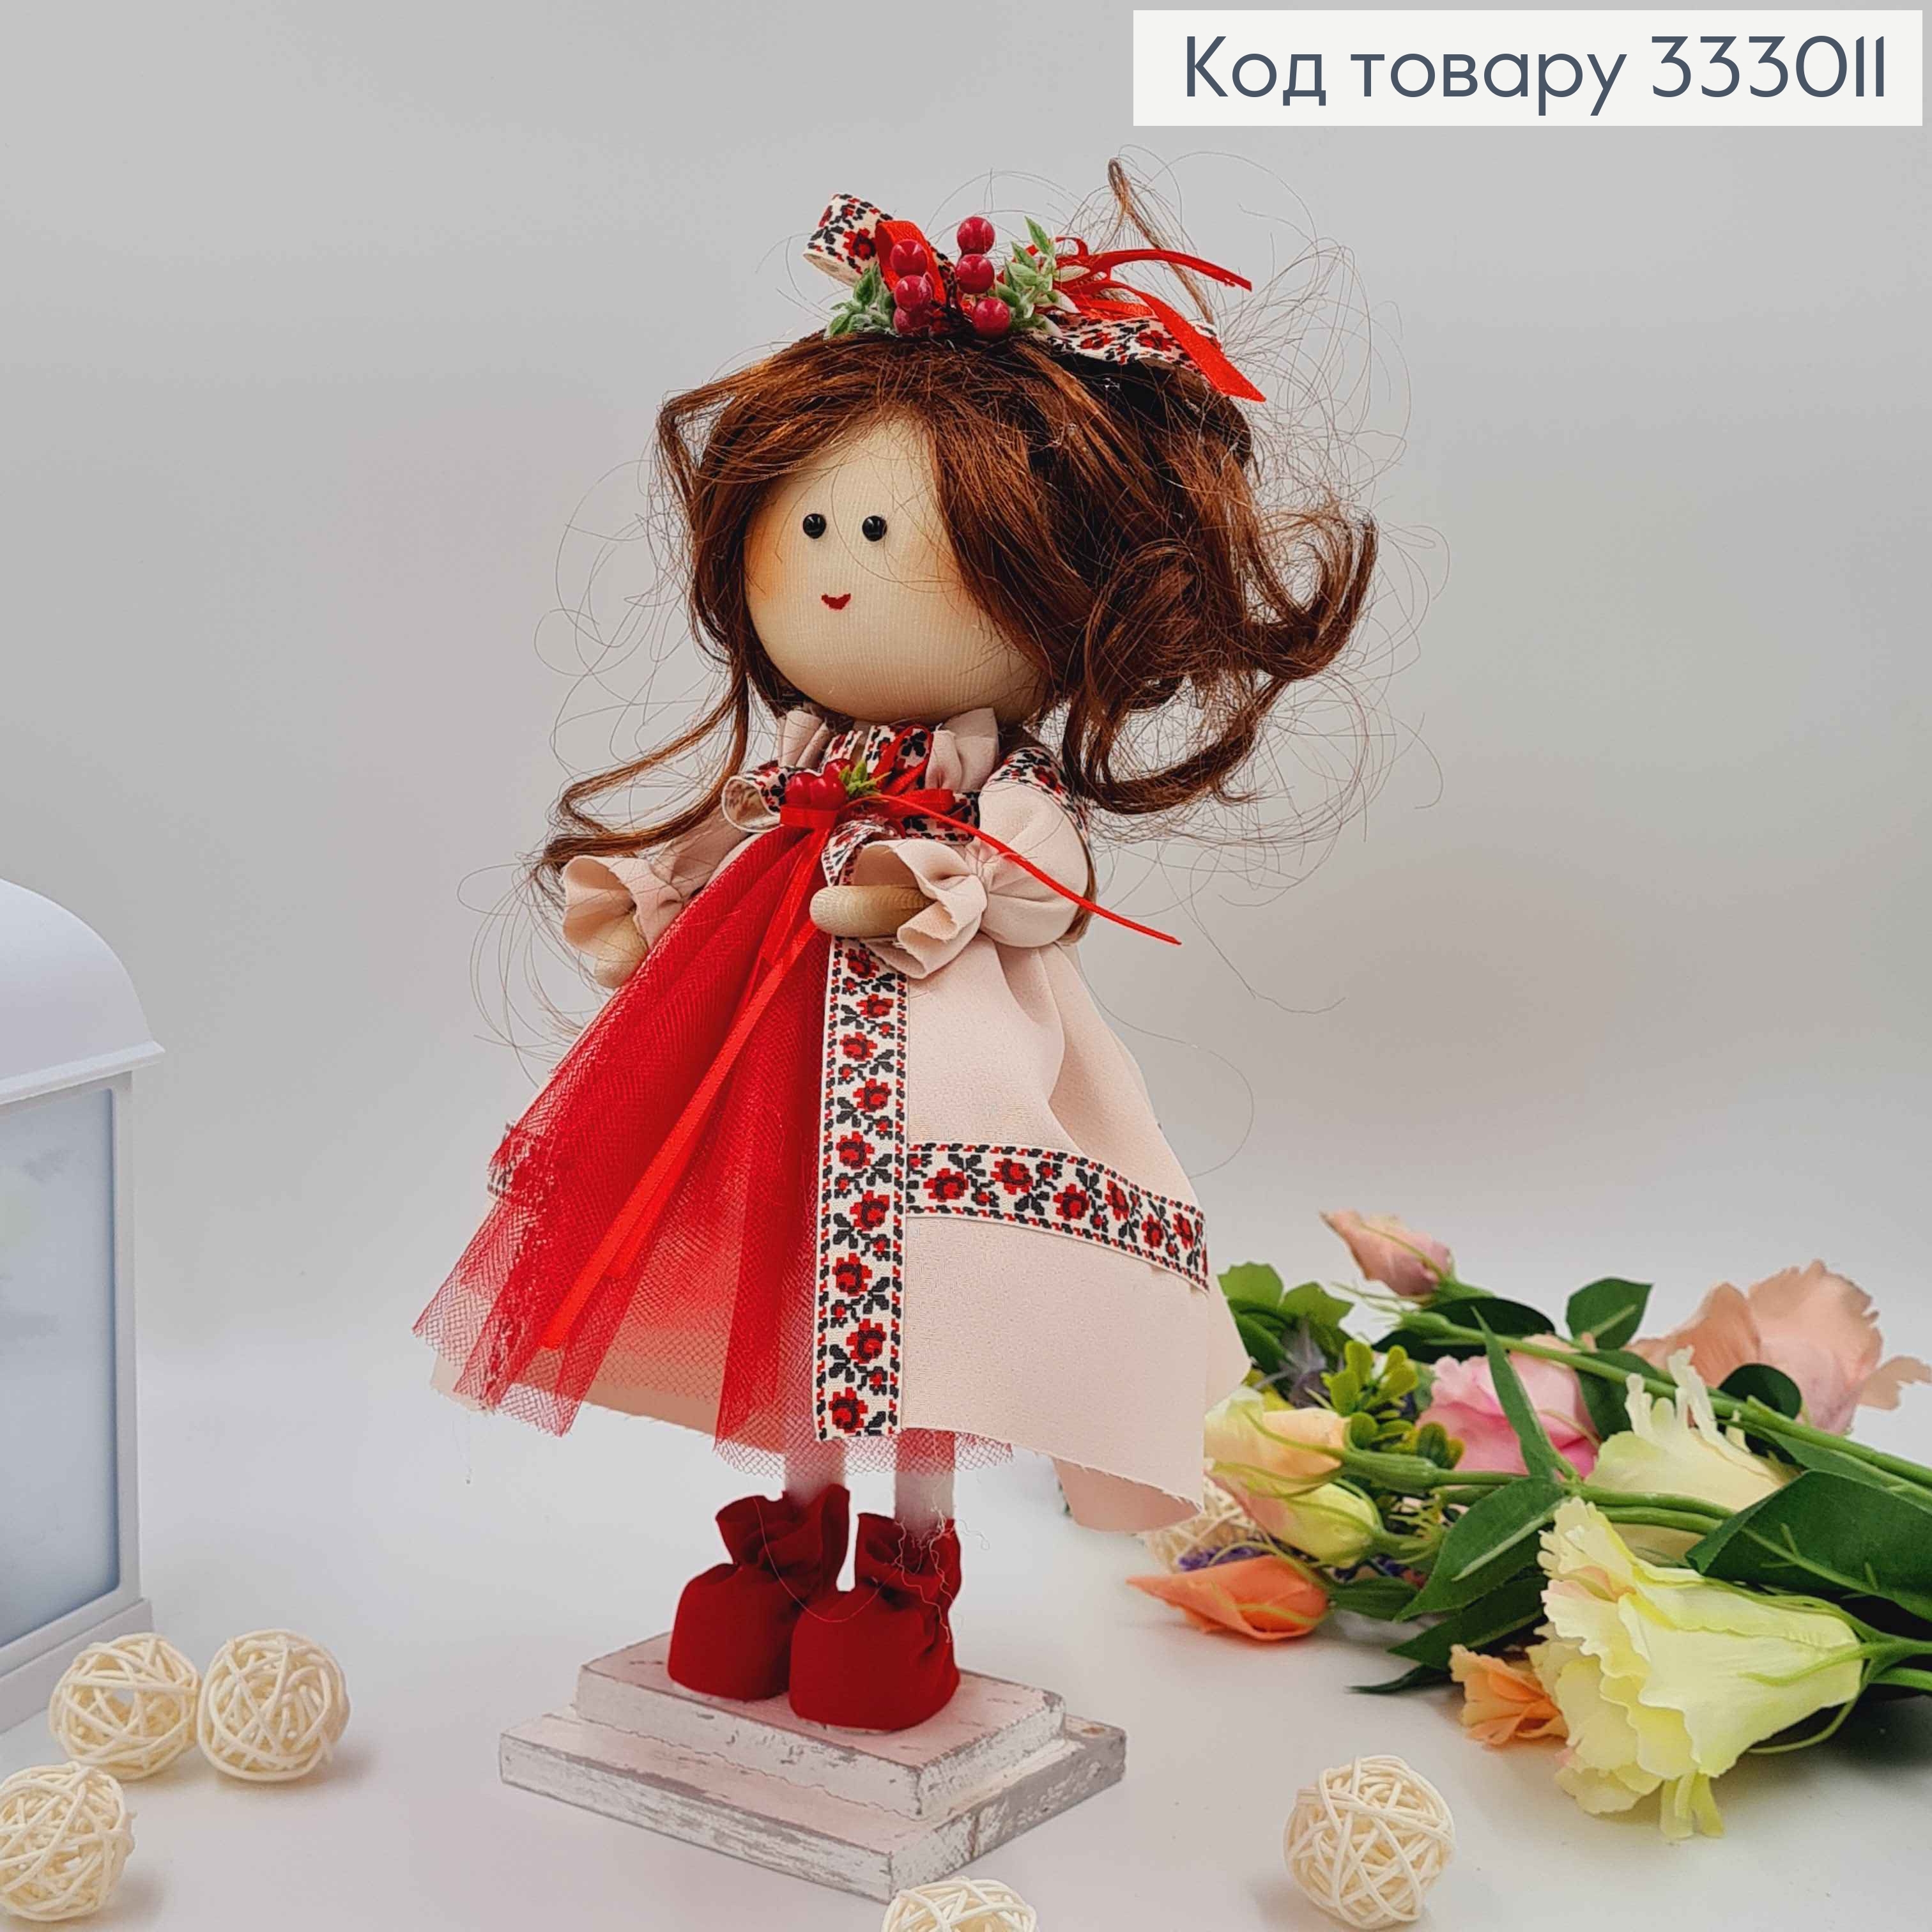 Кукла ДЕВОЧКА в бежевом вышитом платье с фатиновой вставкой, высота 32см,ручная работа, Украина. 333011 фото 2